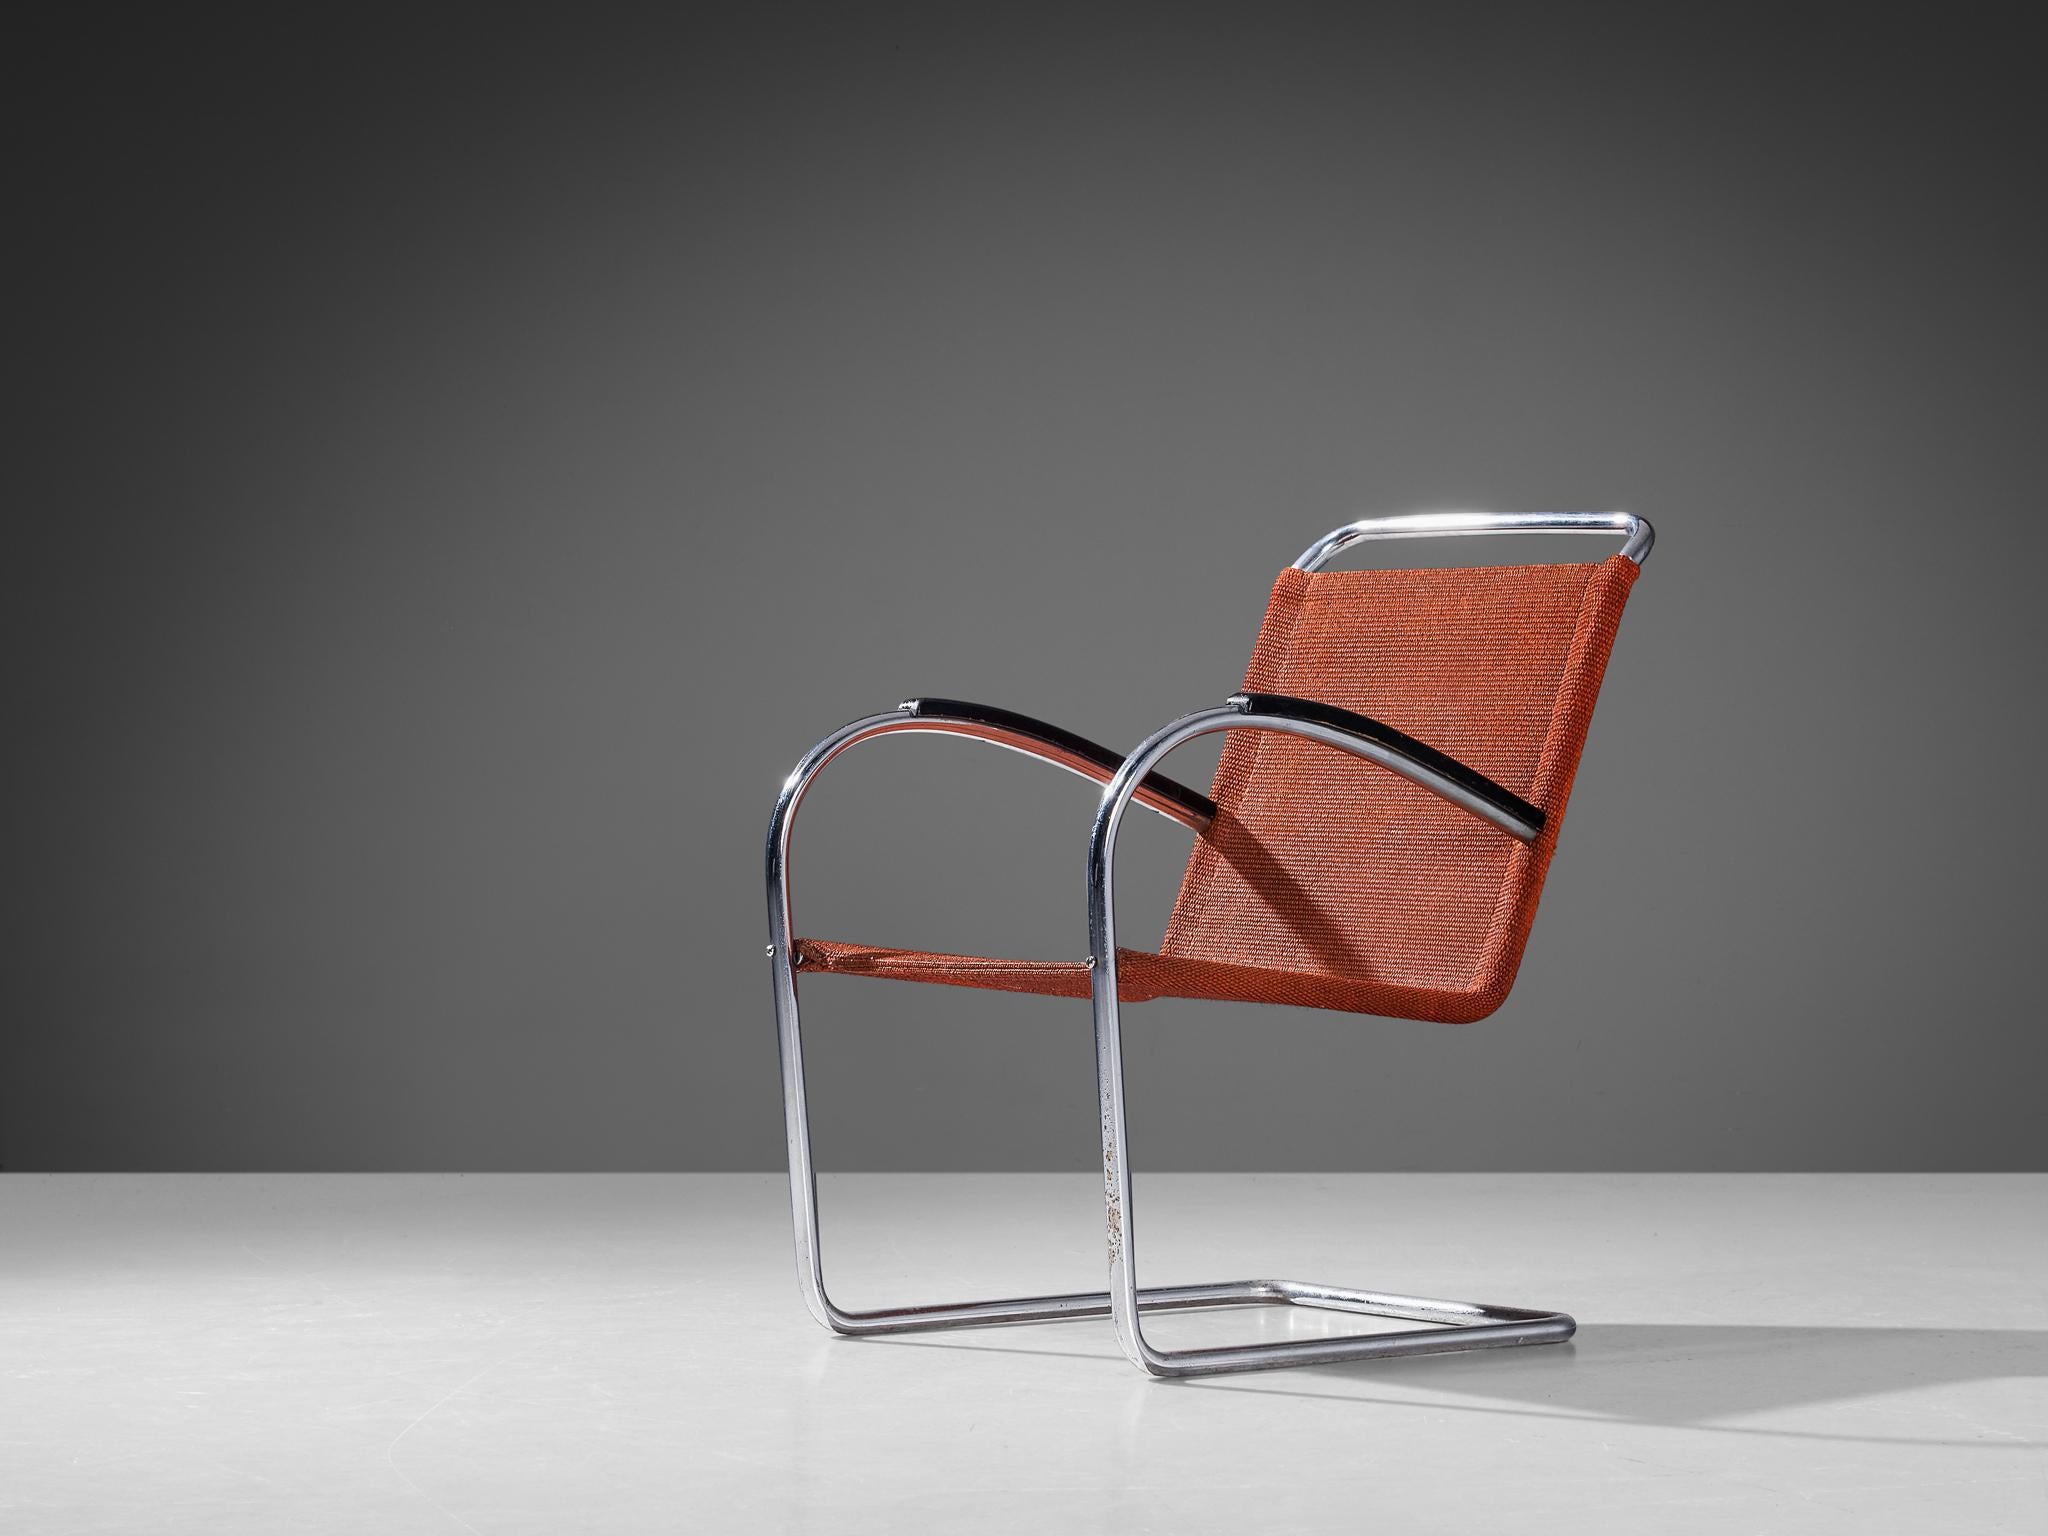 Bas van Pelt für EMS, Sessel, Metall, Sisal, Holz, Niederlande, 1930er Jahre.

Dieser originelle bequeme Stuhl wurde von dem niederländischen Innenarchitekten und Möbeldesigner Bas van Pelt (1900-1945) entworfen und von E.M.S. Overschie hergestellt.